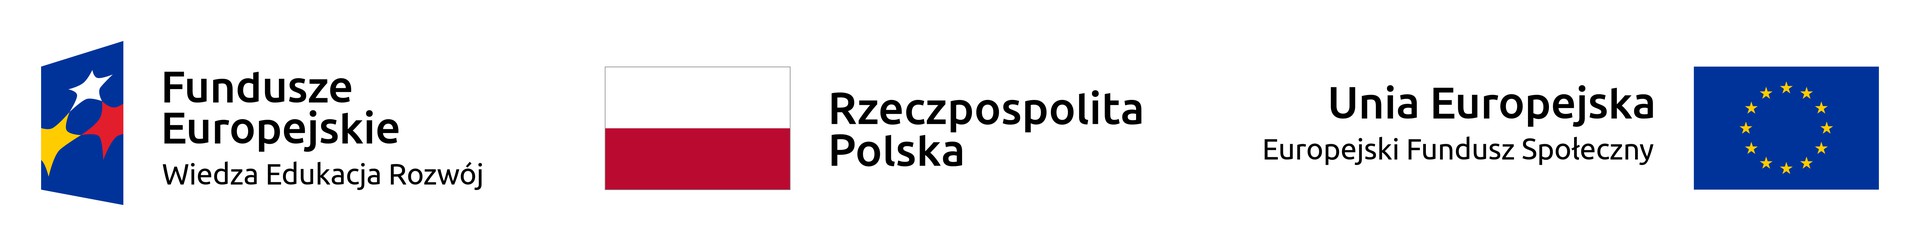 logotypy: Fundusze Europejskie, Rzeczpospolita Polska, Europejski Fundusz Społeczny.